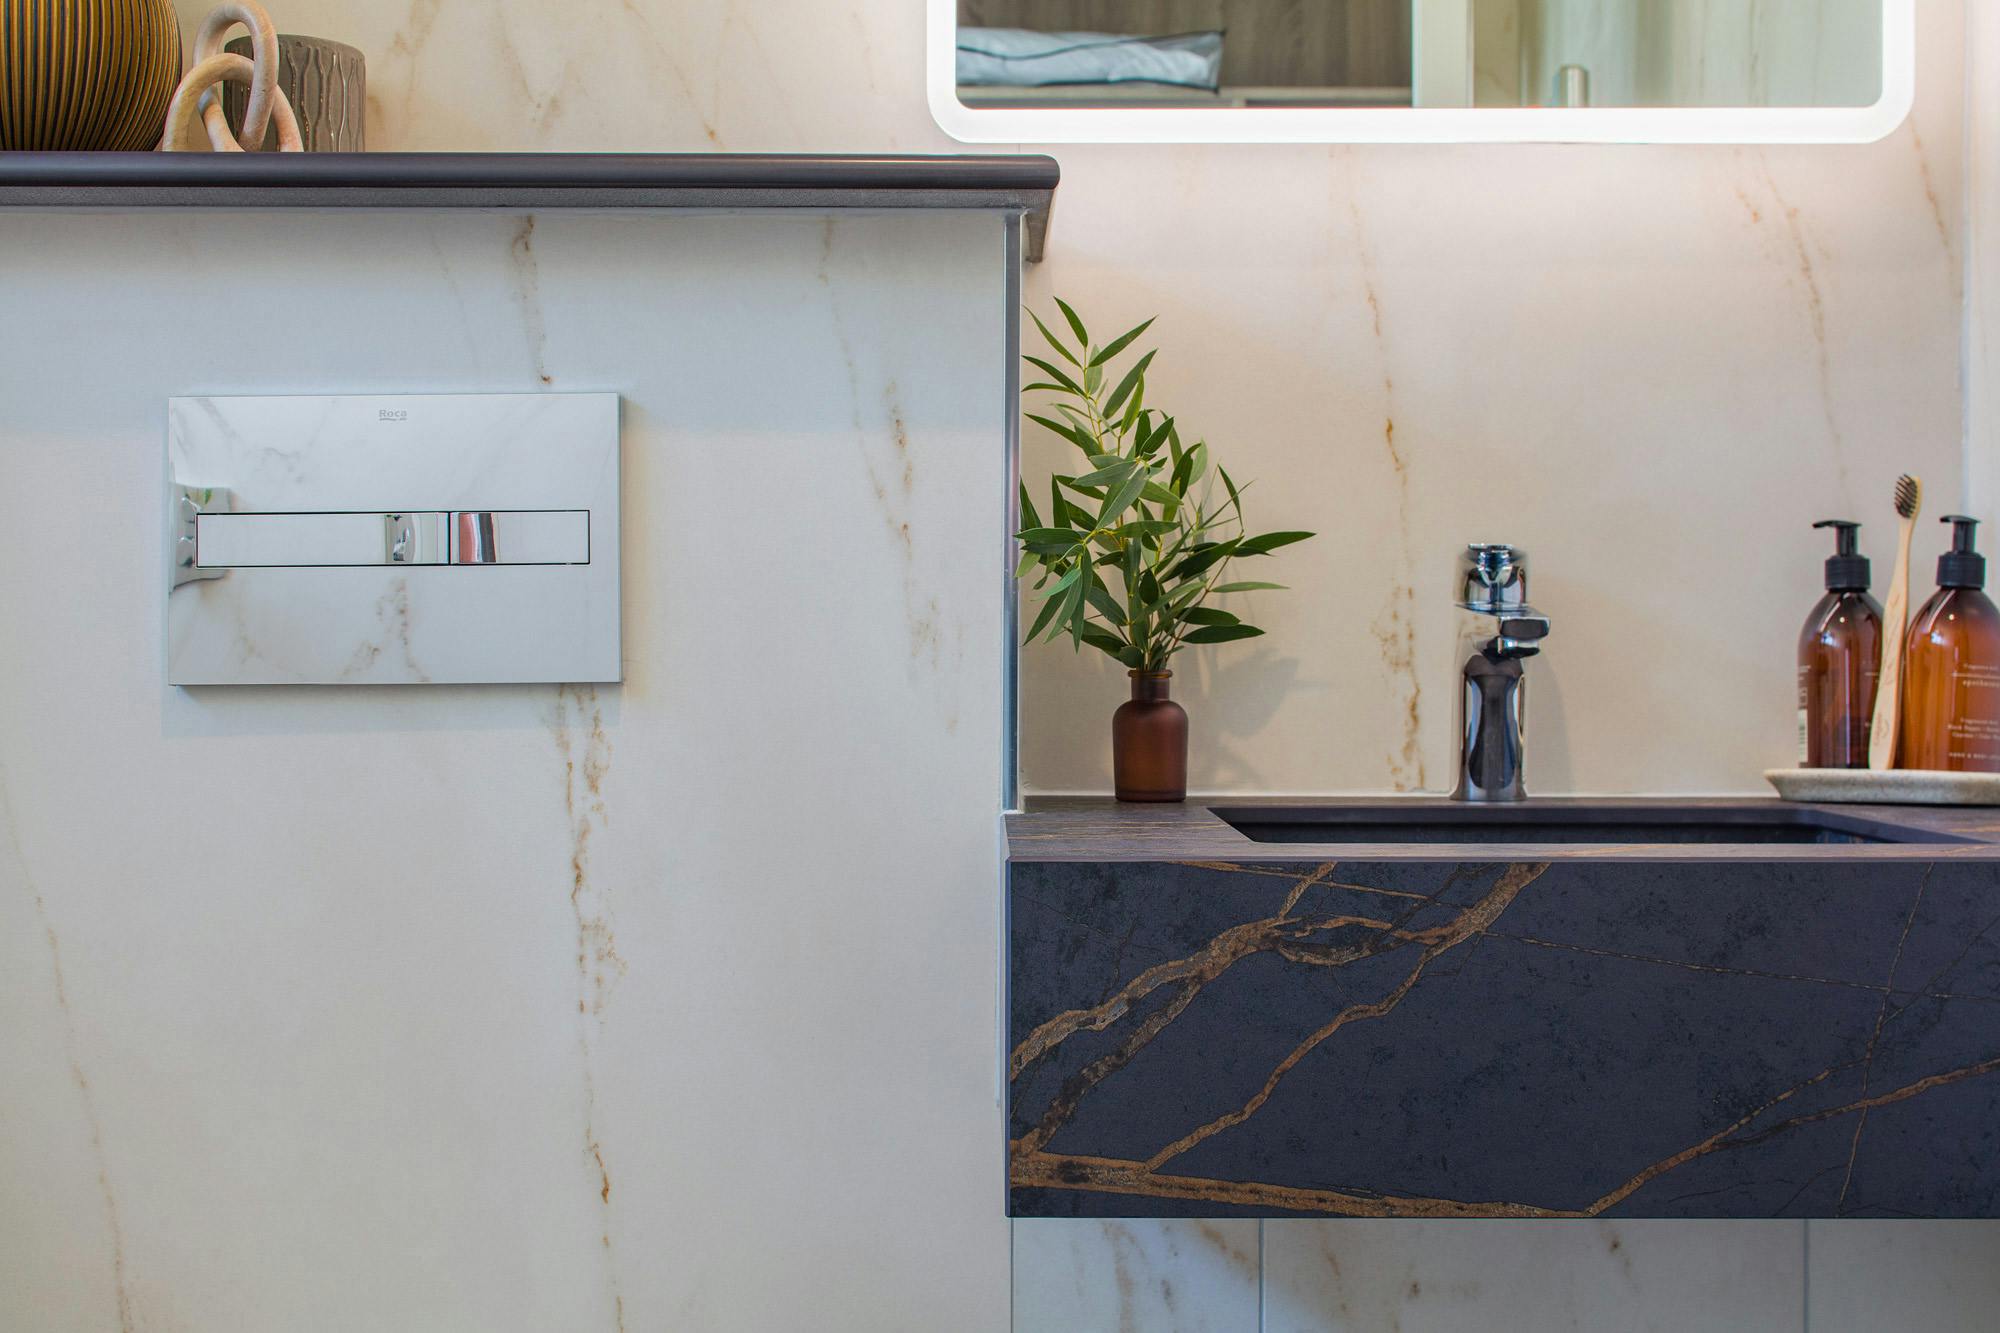 Numero immagine 40 della sezione corrente di Natural light partners with DKTN Marmorio to create an enveloping, sophisticated bathroom di Cosentino Italia